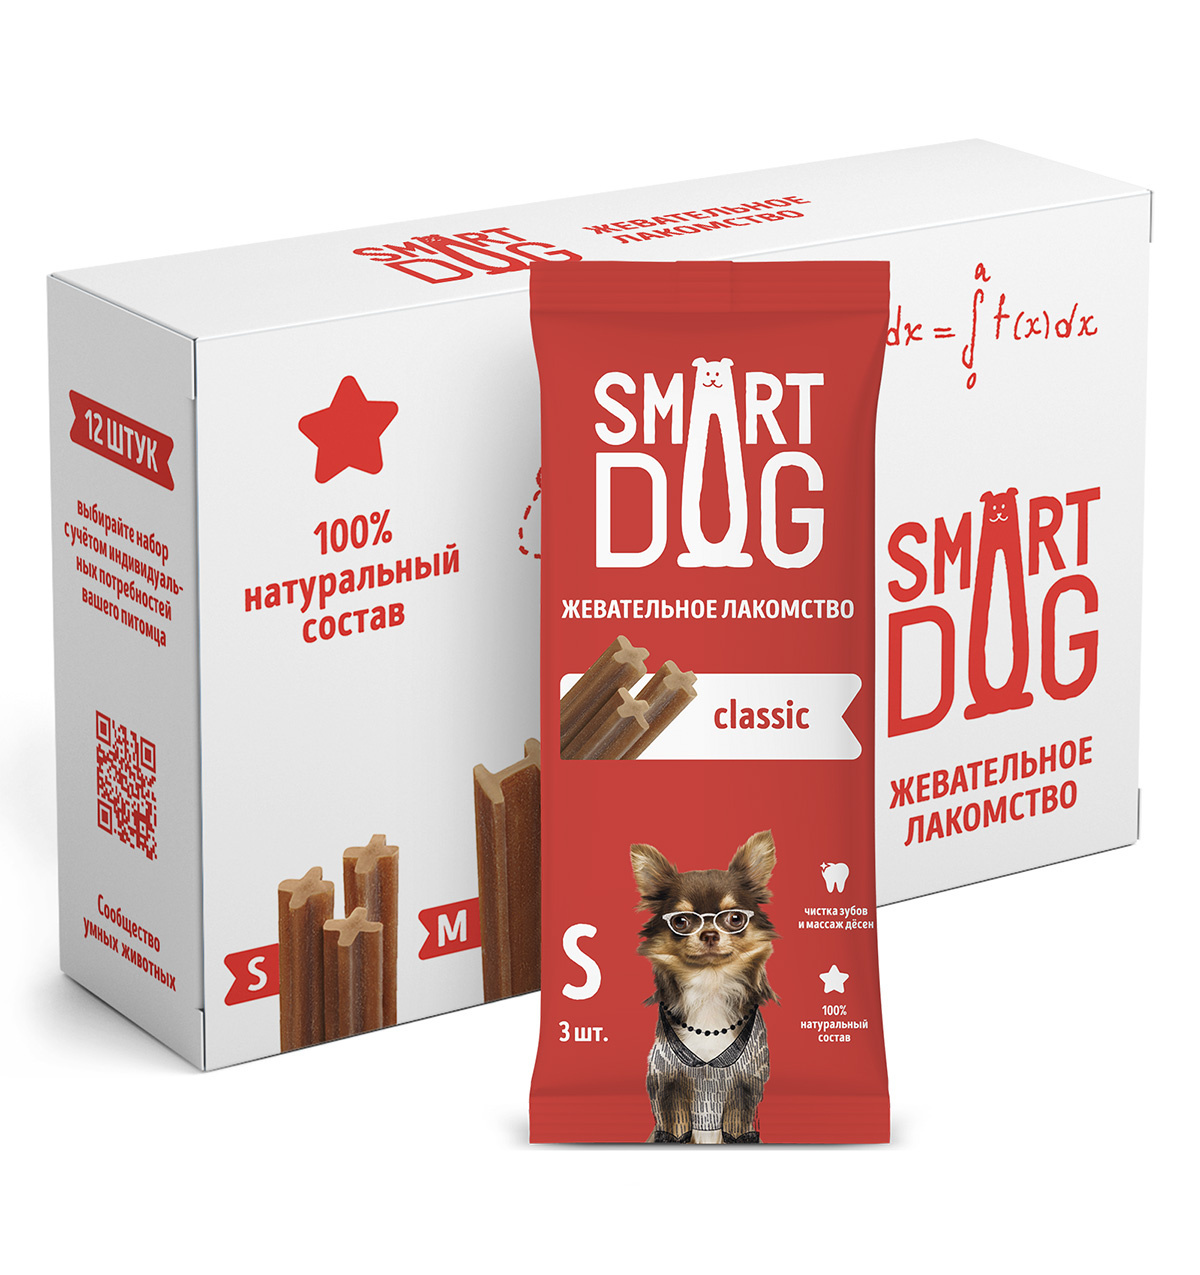 Smart Dog лакомства жевательное лакомство с витаминами и минералами для собак и щенков (432 г) Smart Dog лакомства жевательное лакомство с витаминами и минералами для собак и щенков (432 г) - фото 1